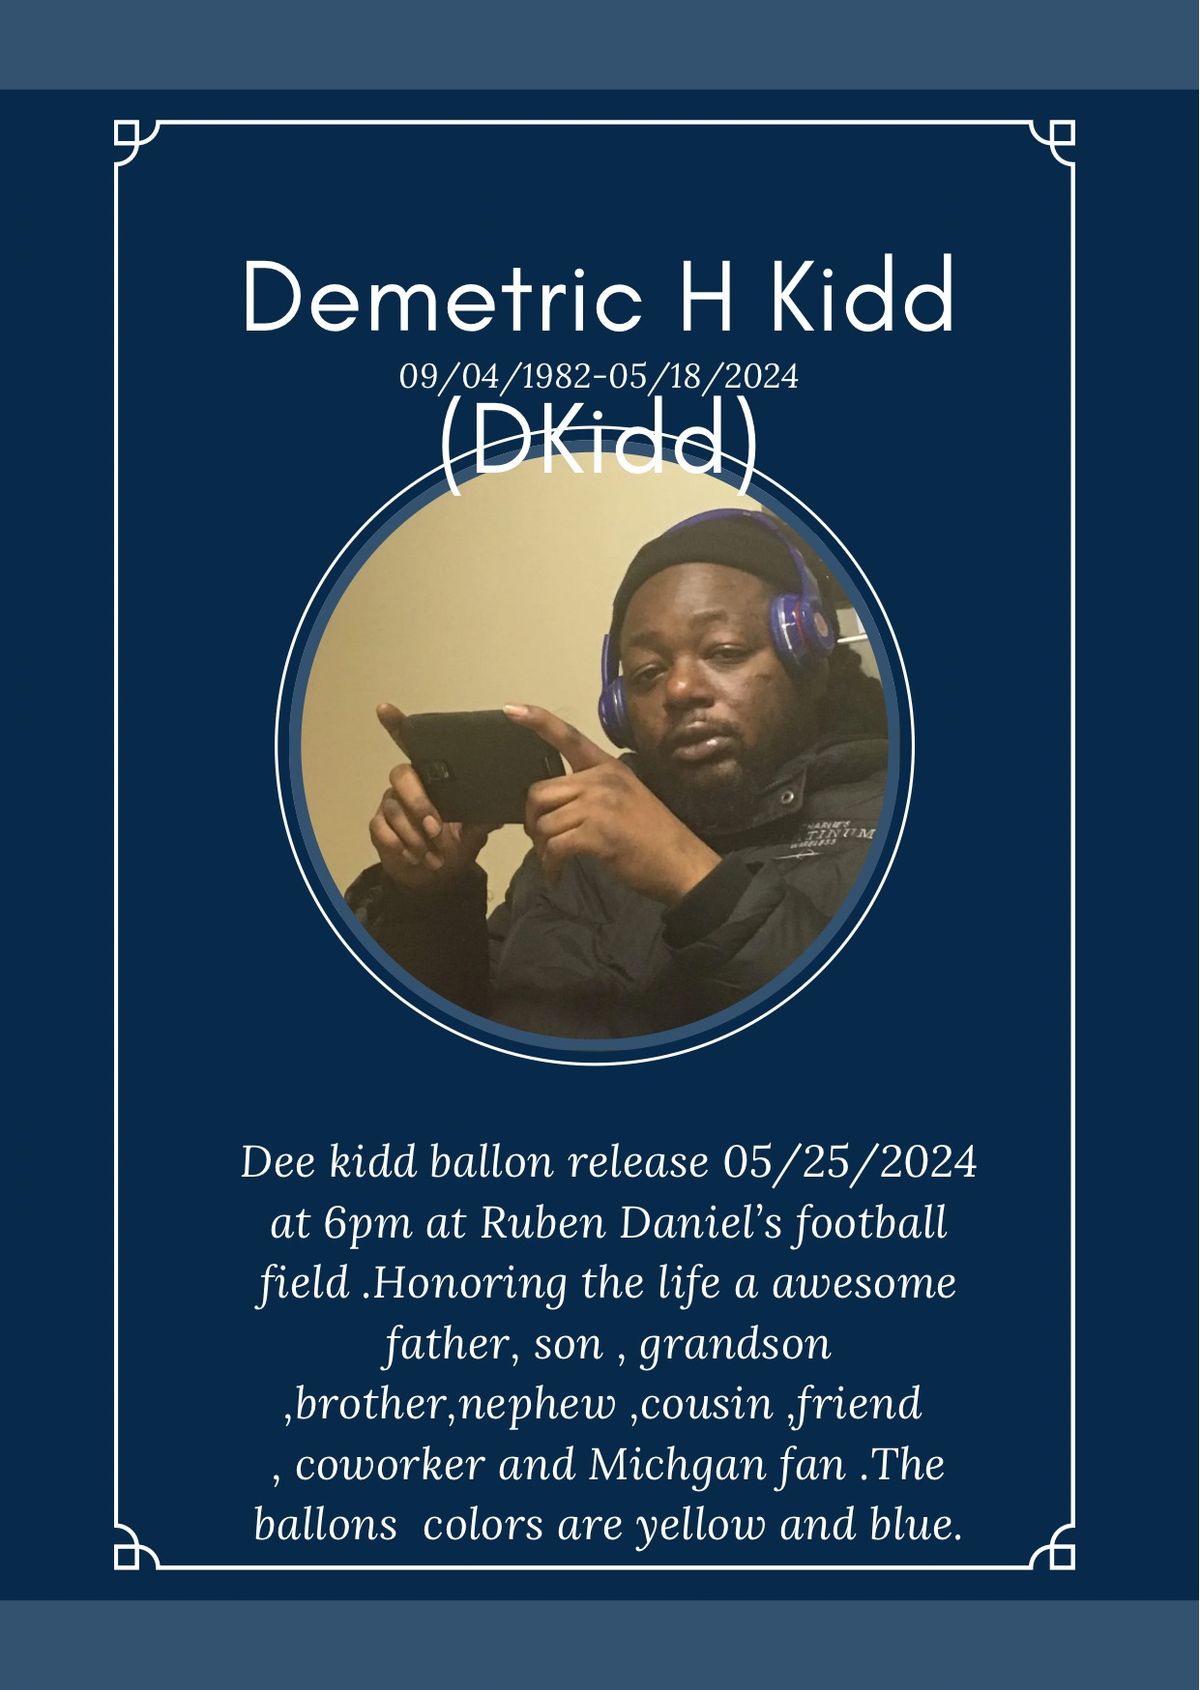 DKidd Ballon release 